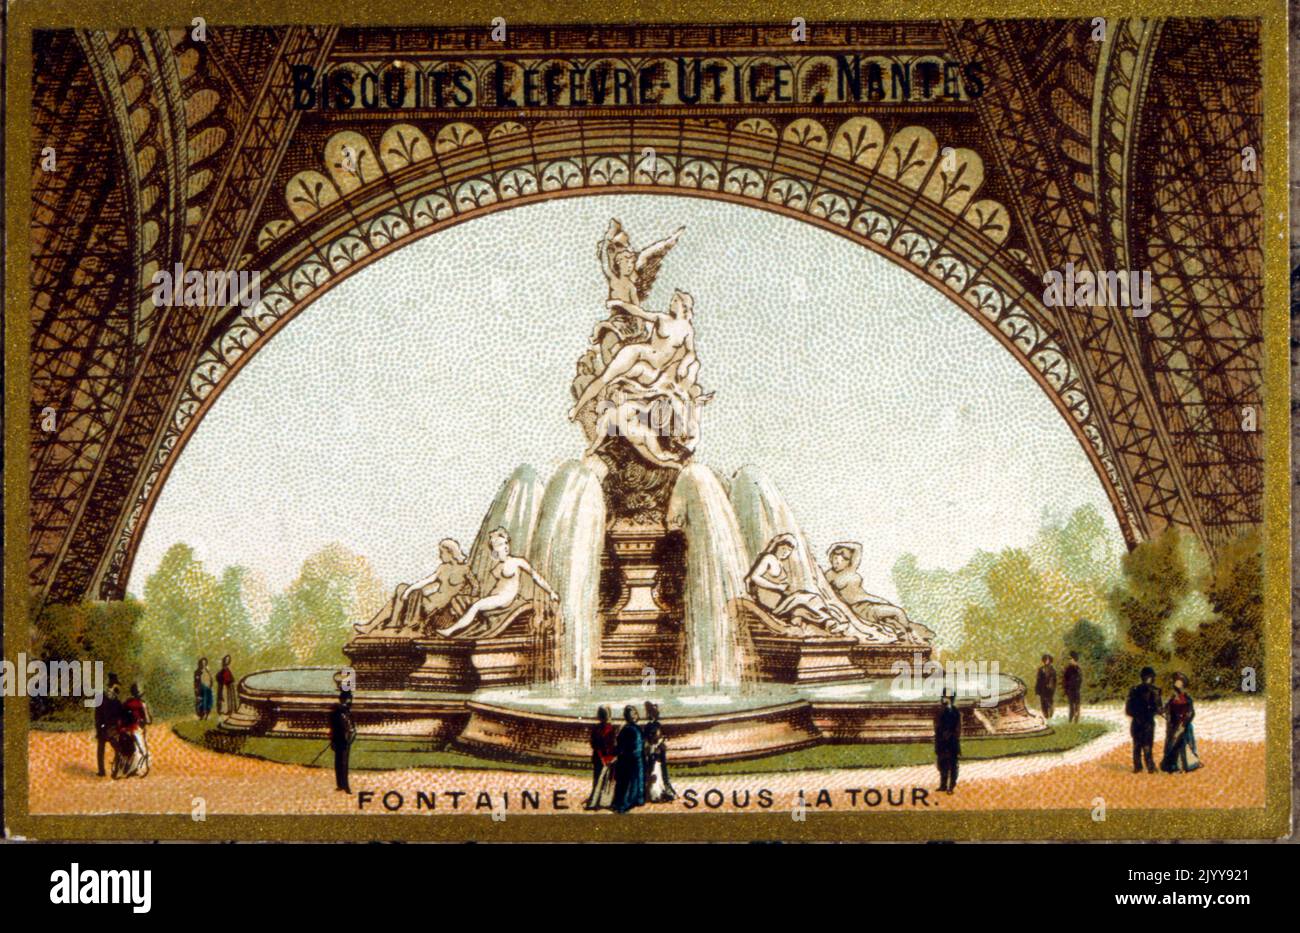 Farbige Illustration zur Ausstellung von 1889 mit dem Brunnen unter dem Eiffelturm. Hergestellt von der Keksfabrik Lefevre in Nantes. Stockfoto